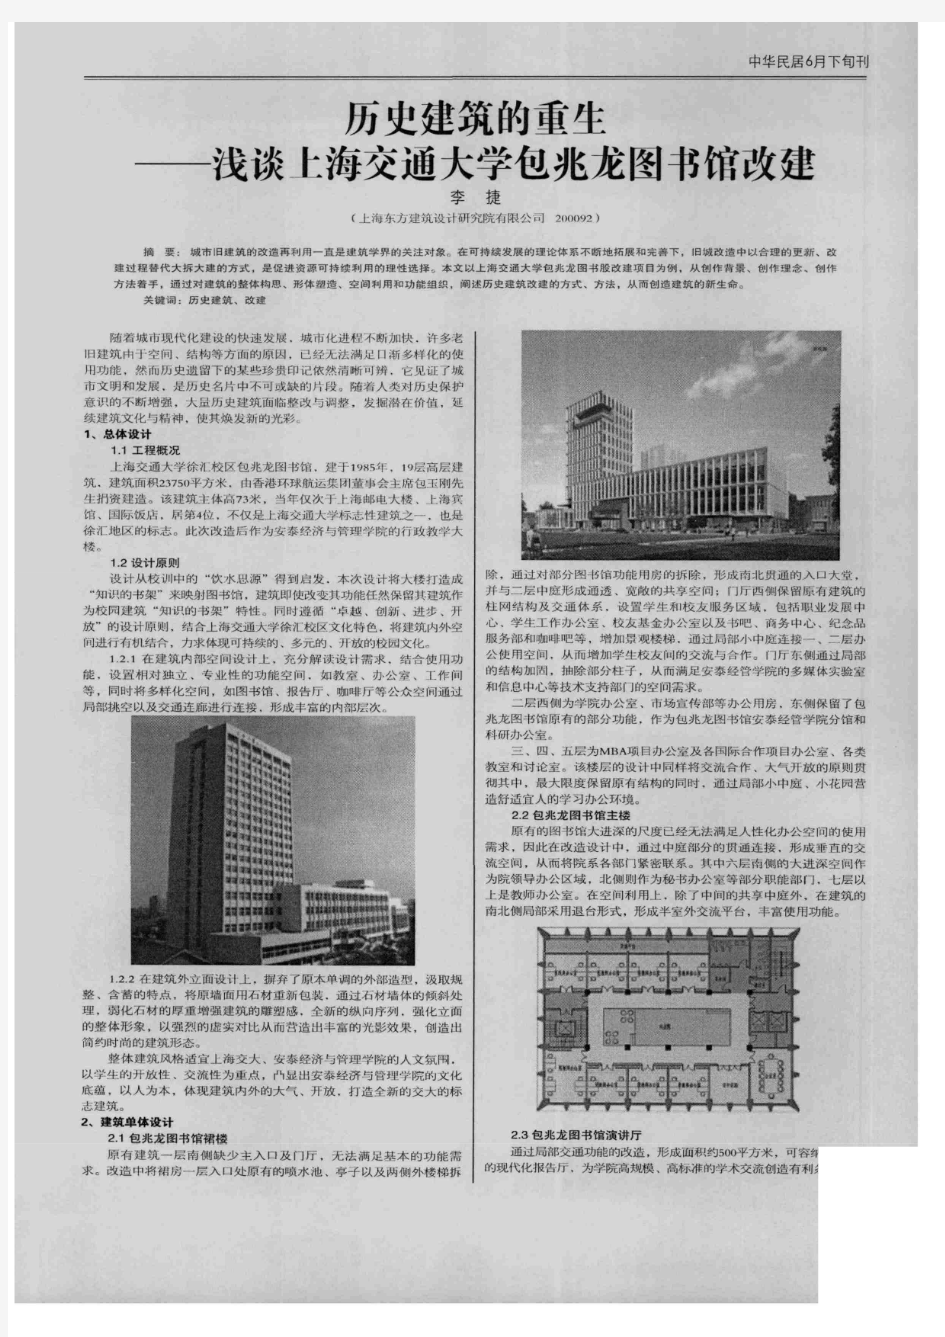 历史建筑的重生——上海交通大学包兆龙图书馆改建